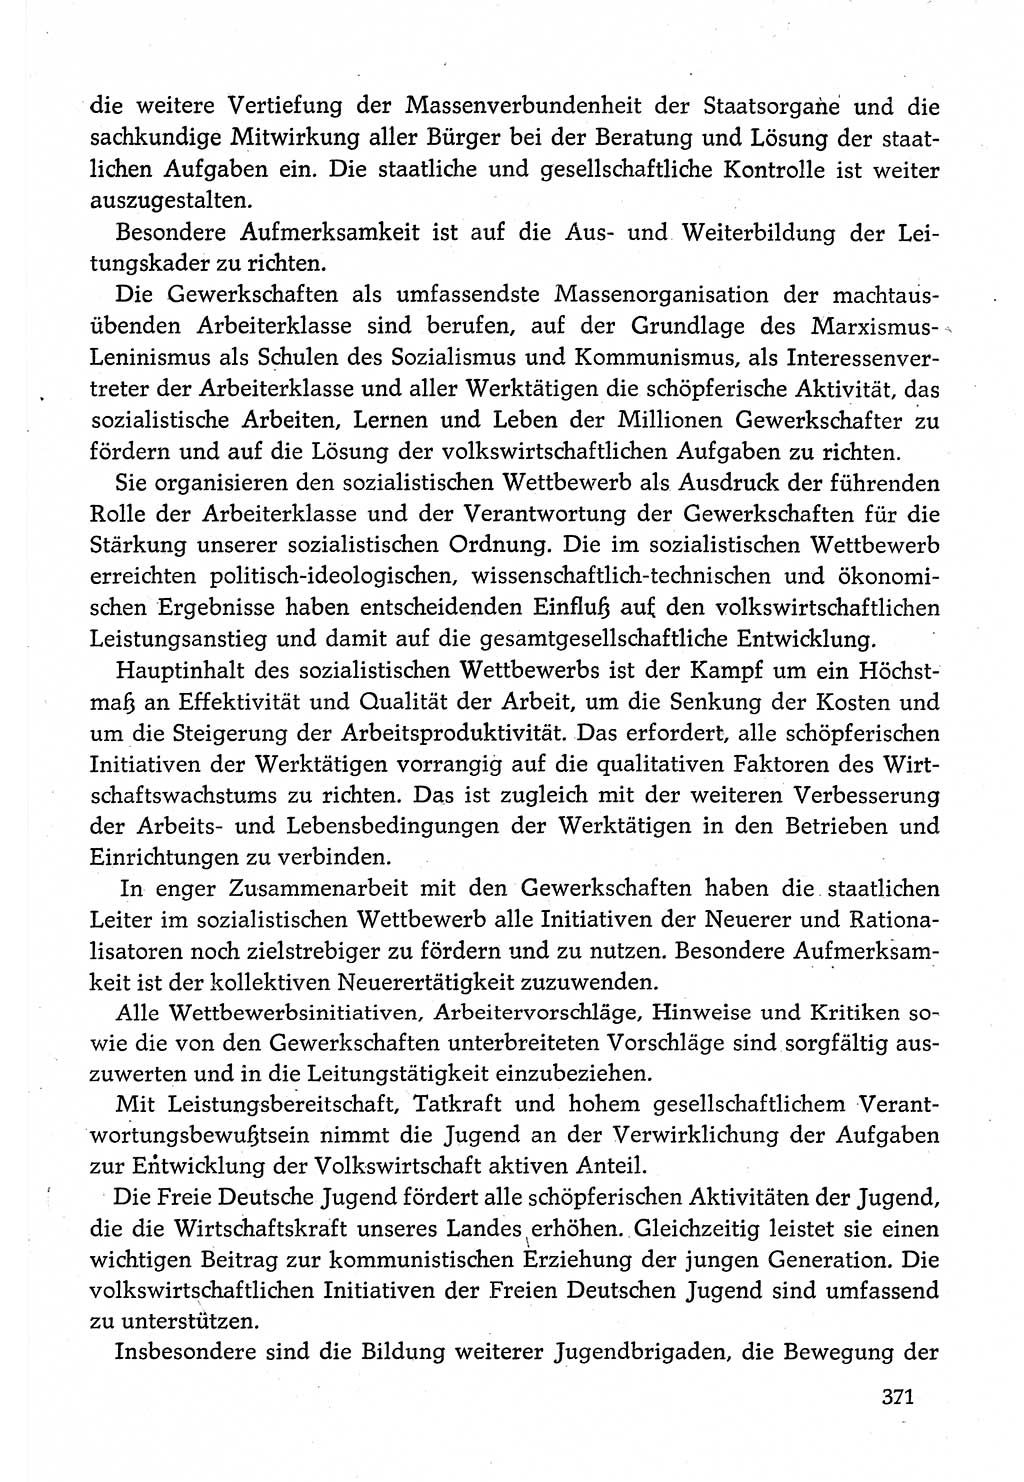 Dokumente der Sozialistischen Einheitspartei Deutschlands (SED) [Deutsche Demokratische Republik (DDR)] 1980-1981, Seite 371 (Dok. SED DDR 1980-1981, S. 371)